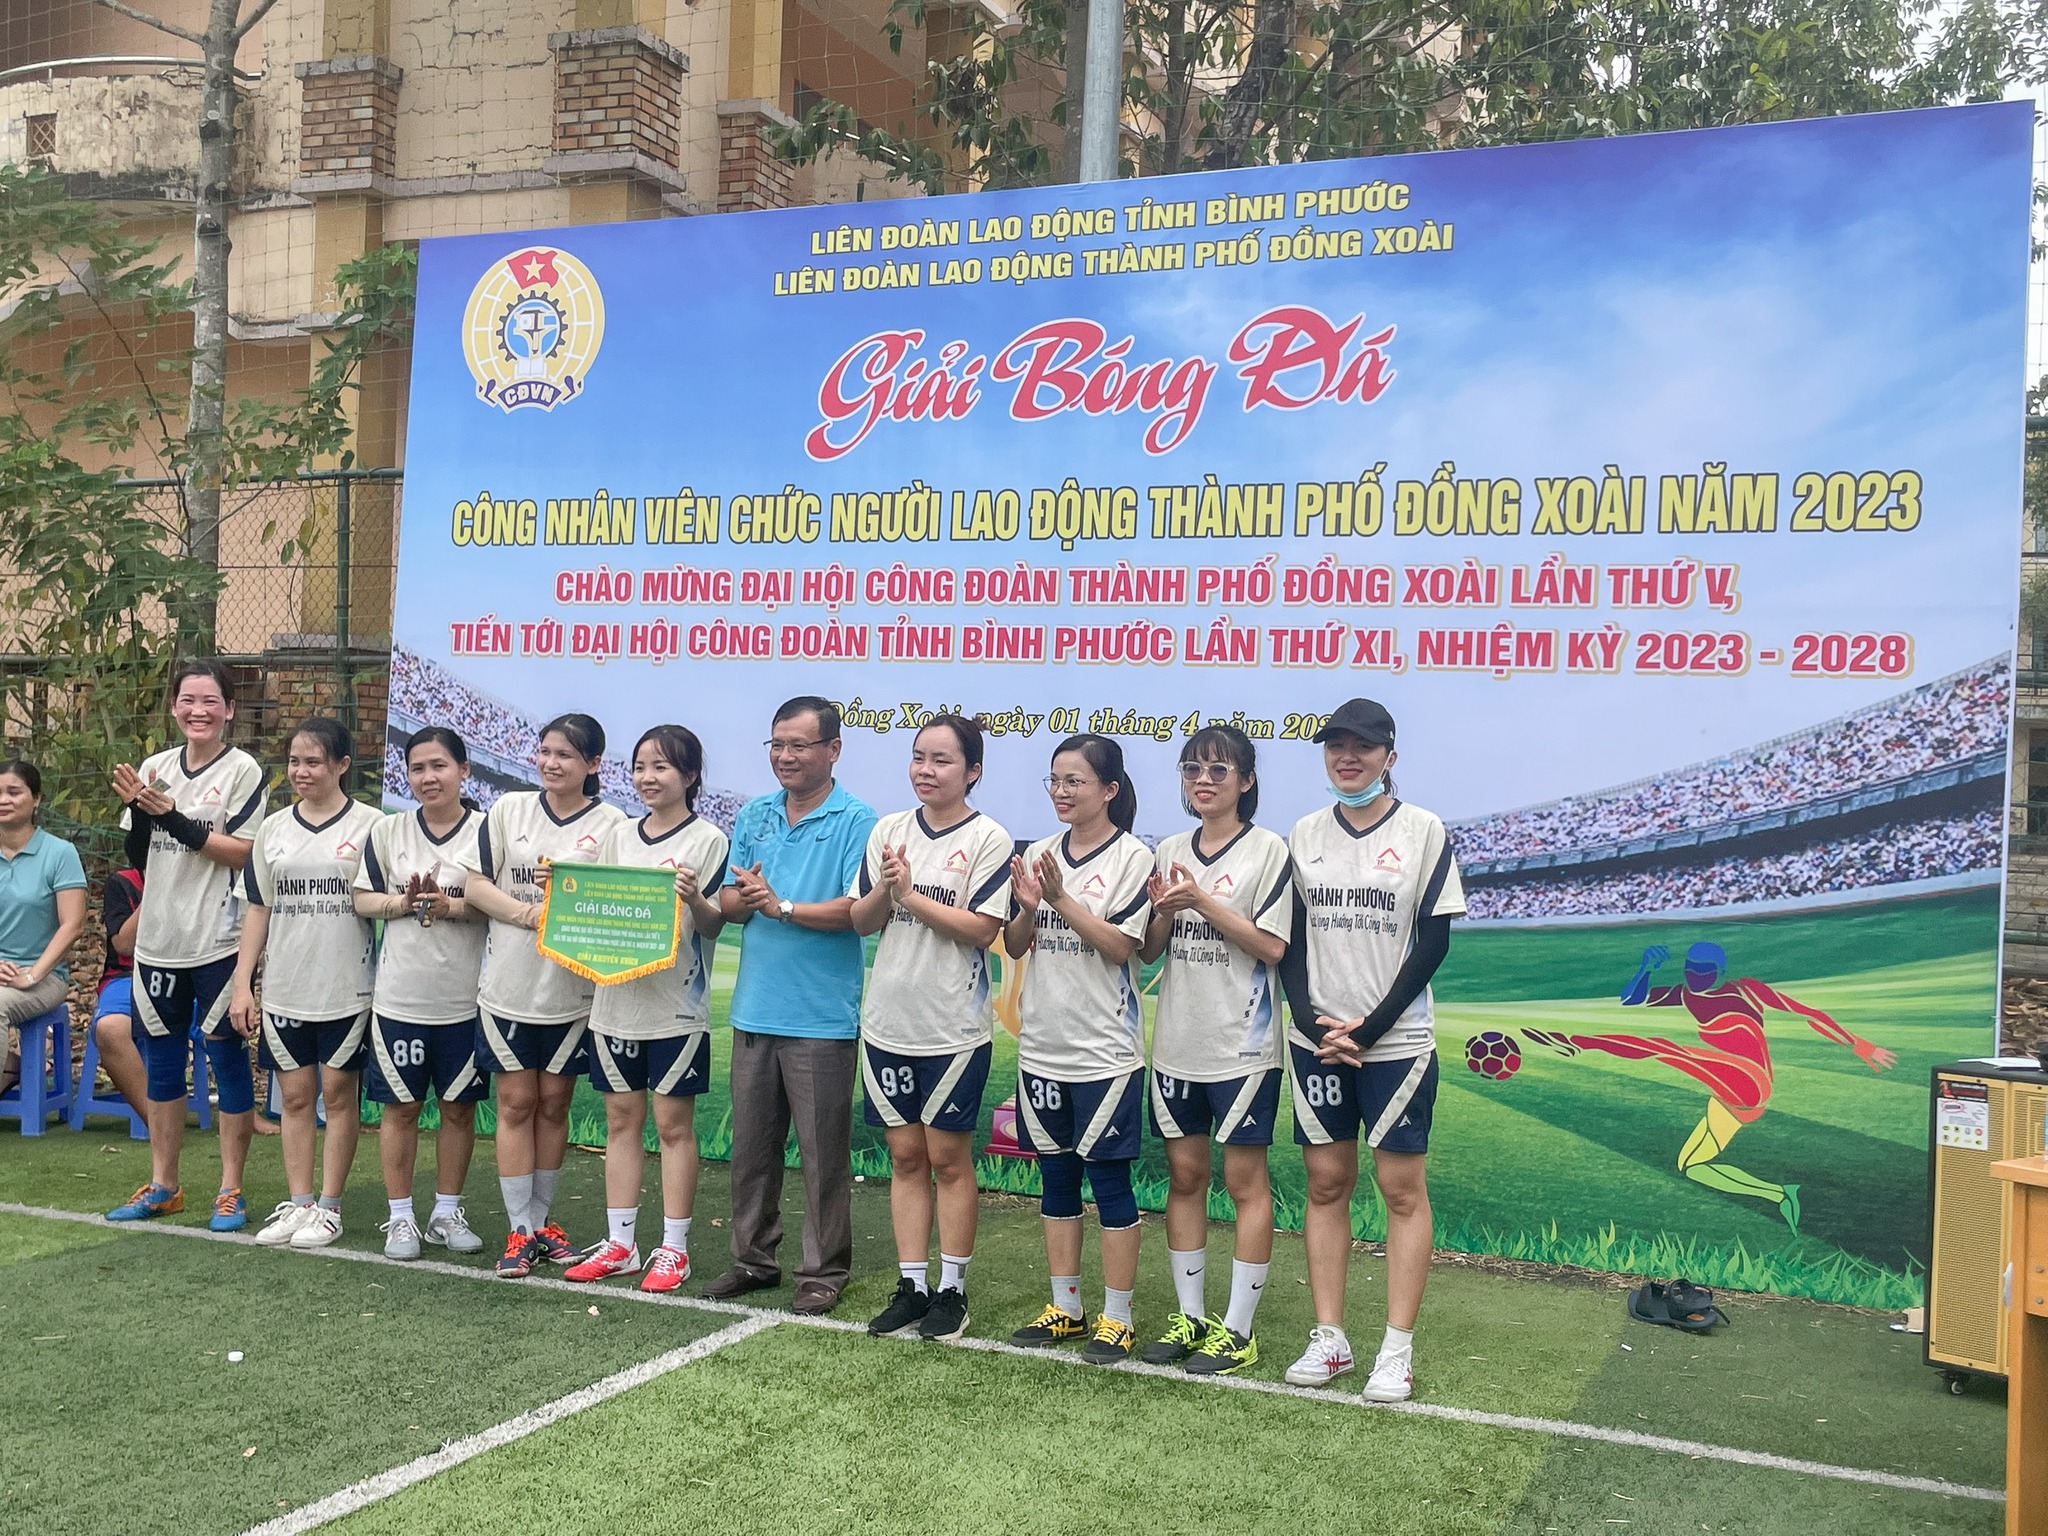 Thành Phương tham gia Giải bóng đá Chào mừng ĐHCĐ Đồng Xoài lần V